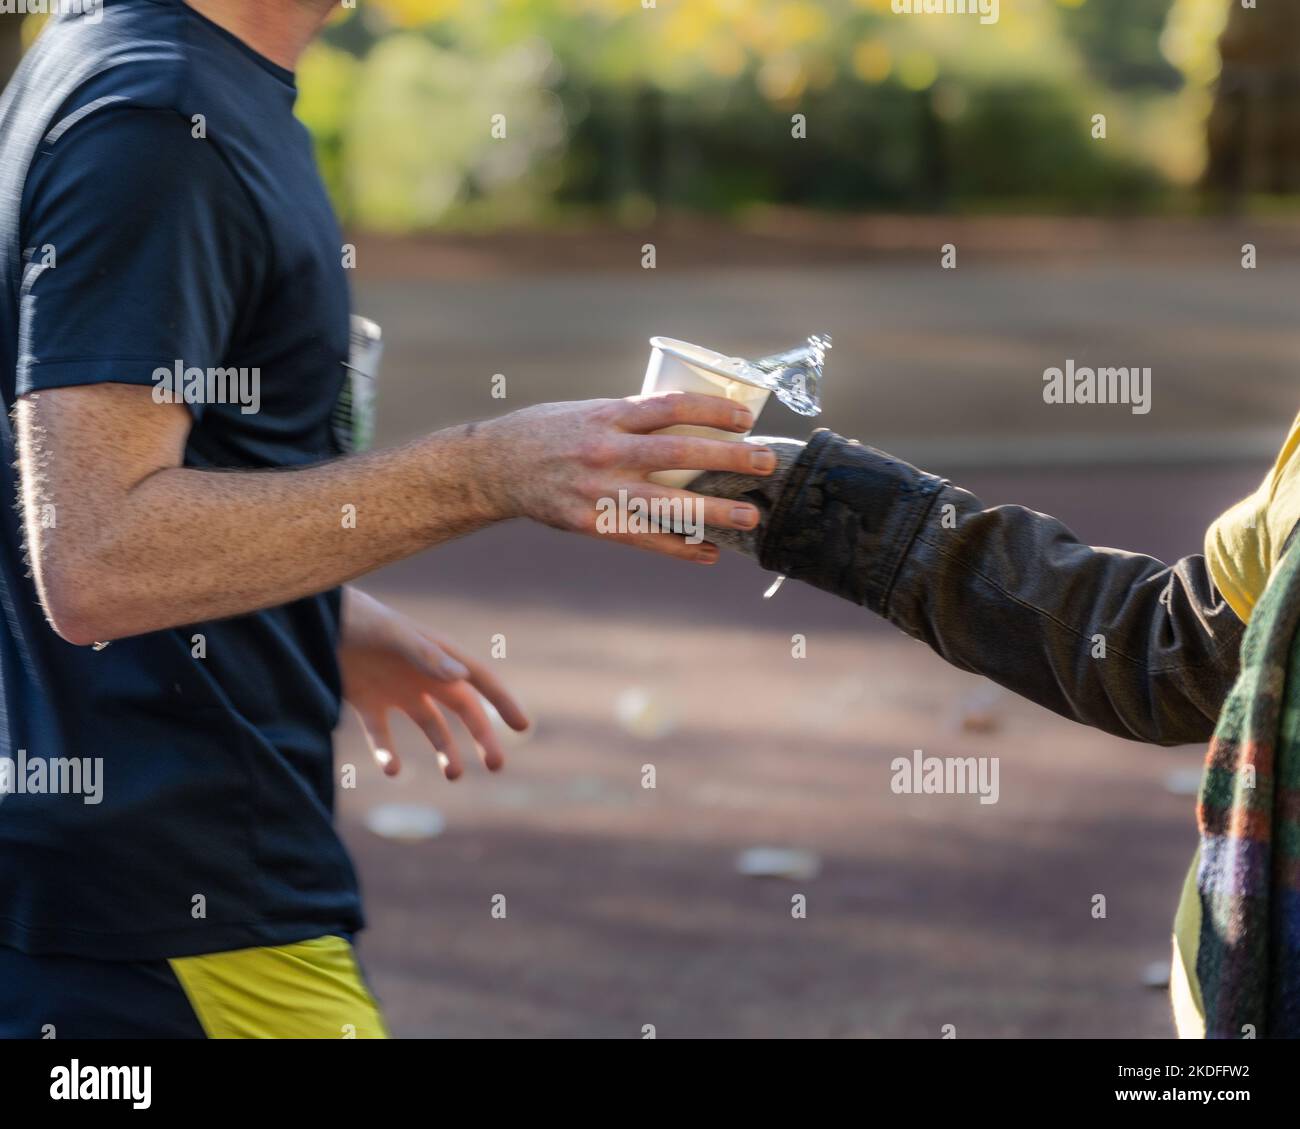 Des bénévoles distribuent des rafraîchissements aux coureurs lors d'un marathon Banque D'Images